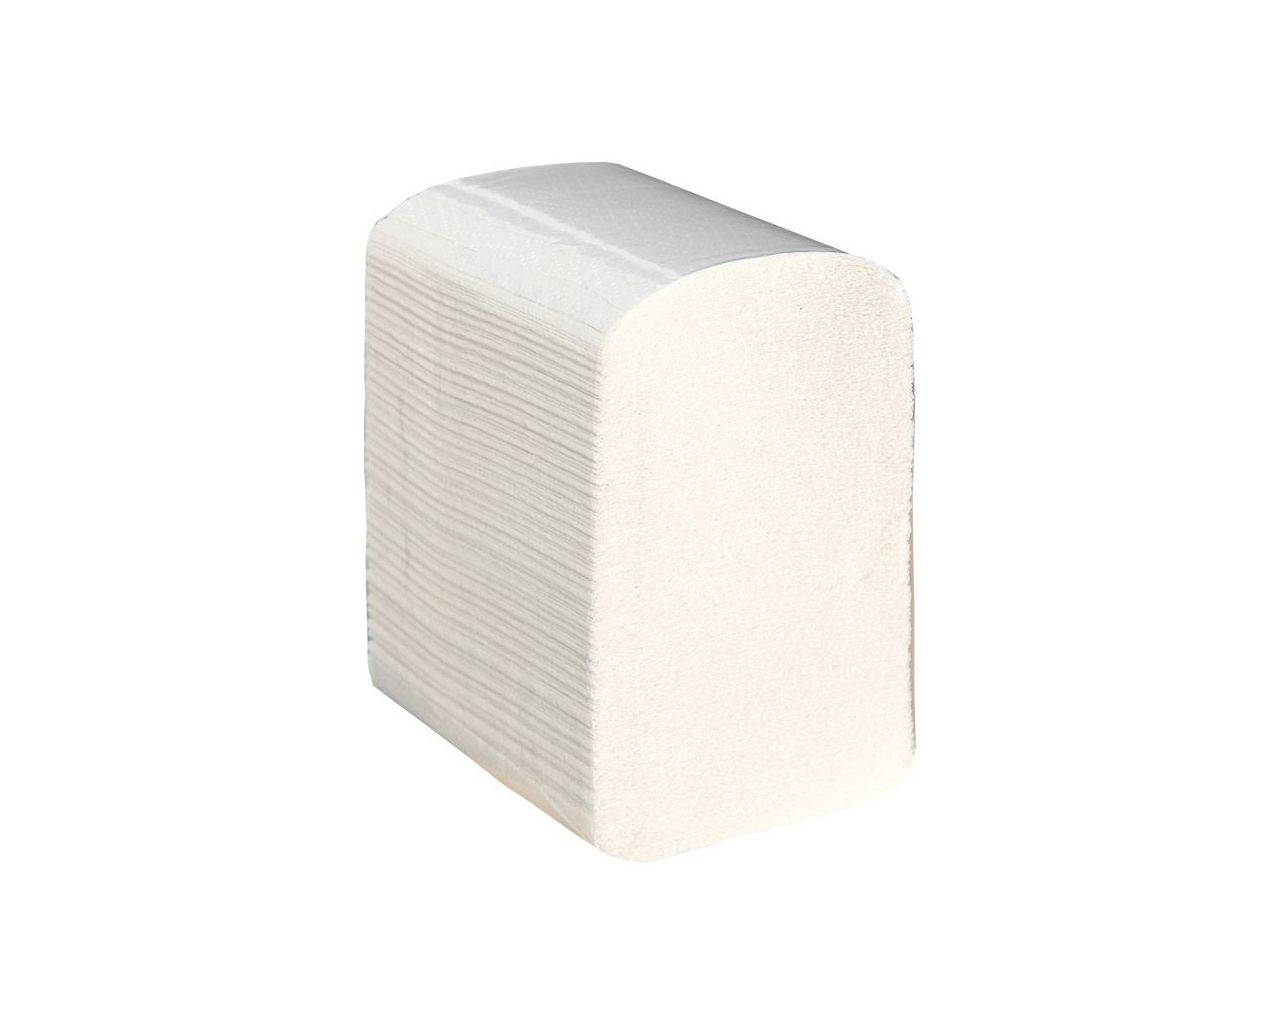 Papier toaletowy w listkach MERIDA TOP, biały, celulozowy, dwuwarstwowy, składany, karton 9000 szt.